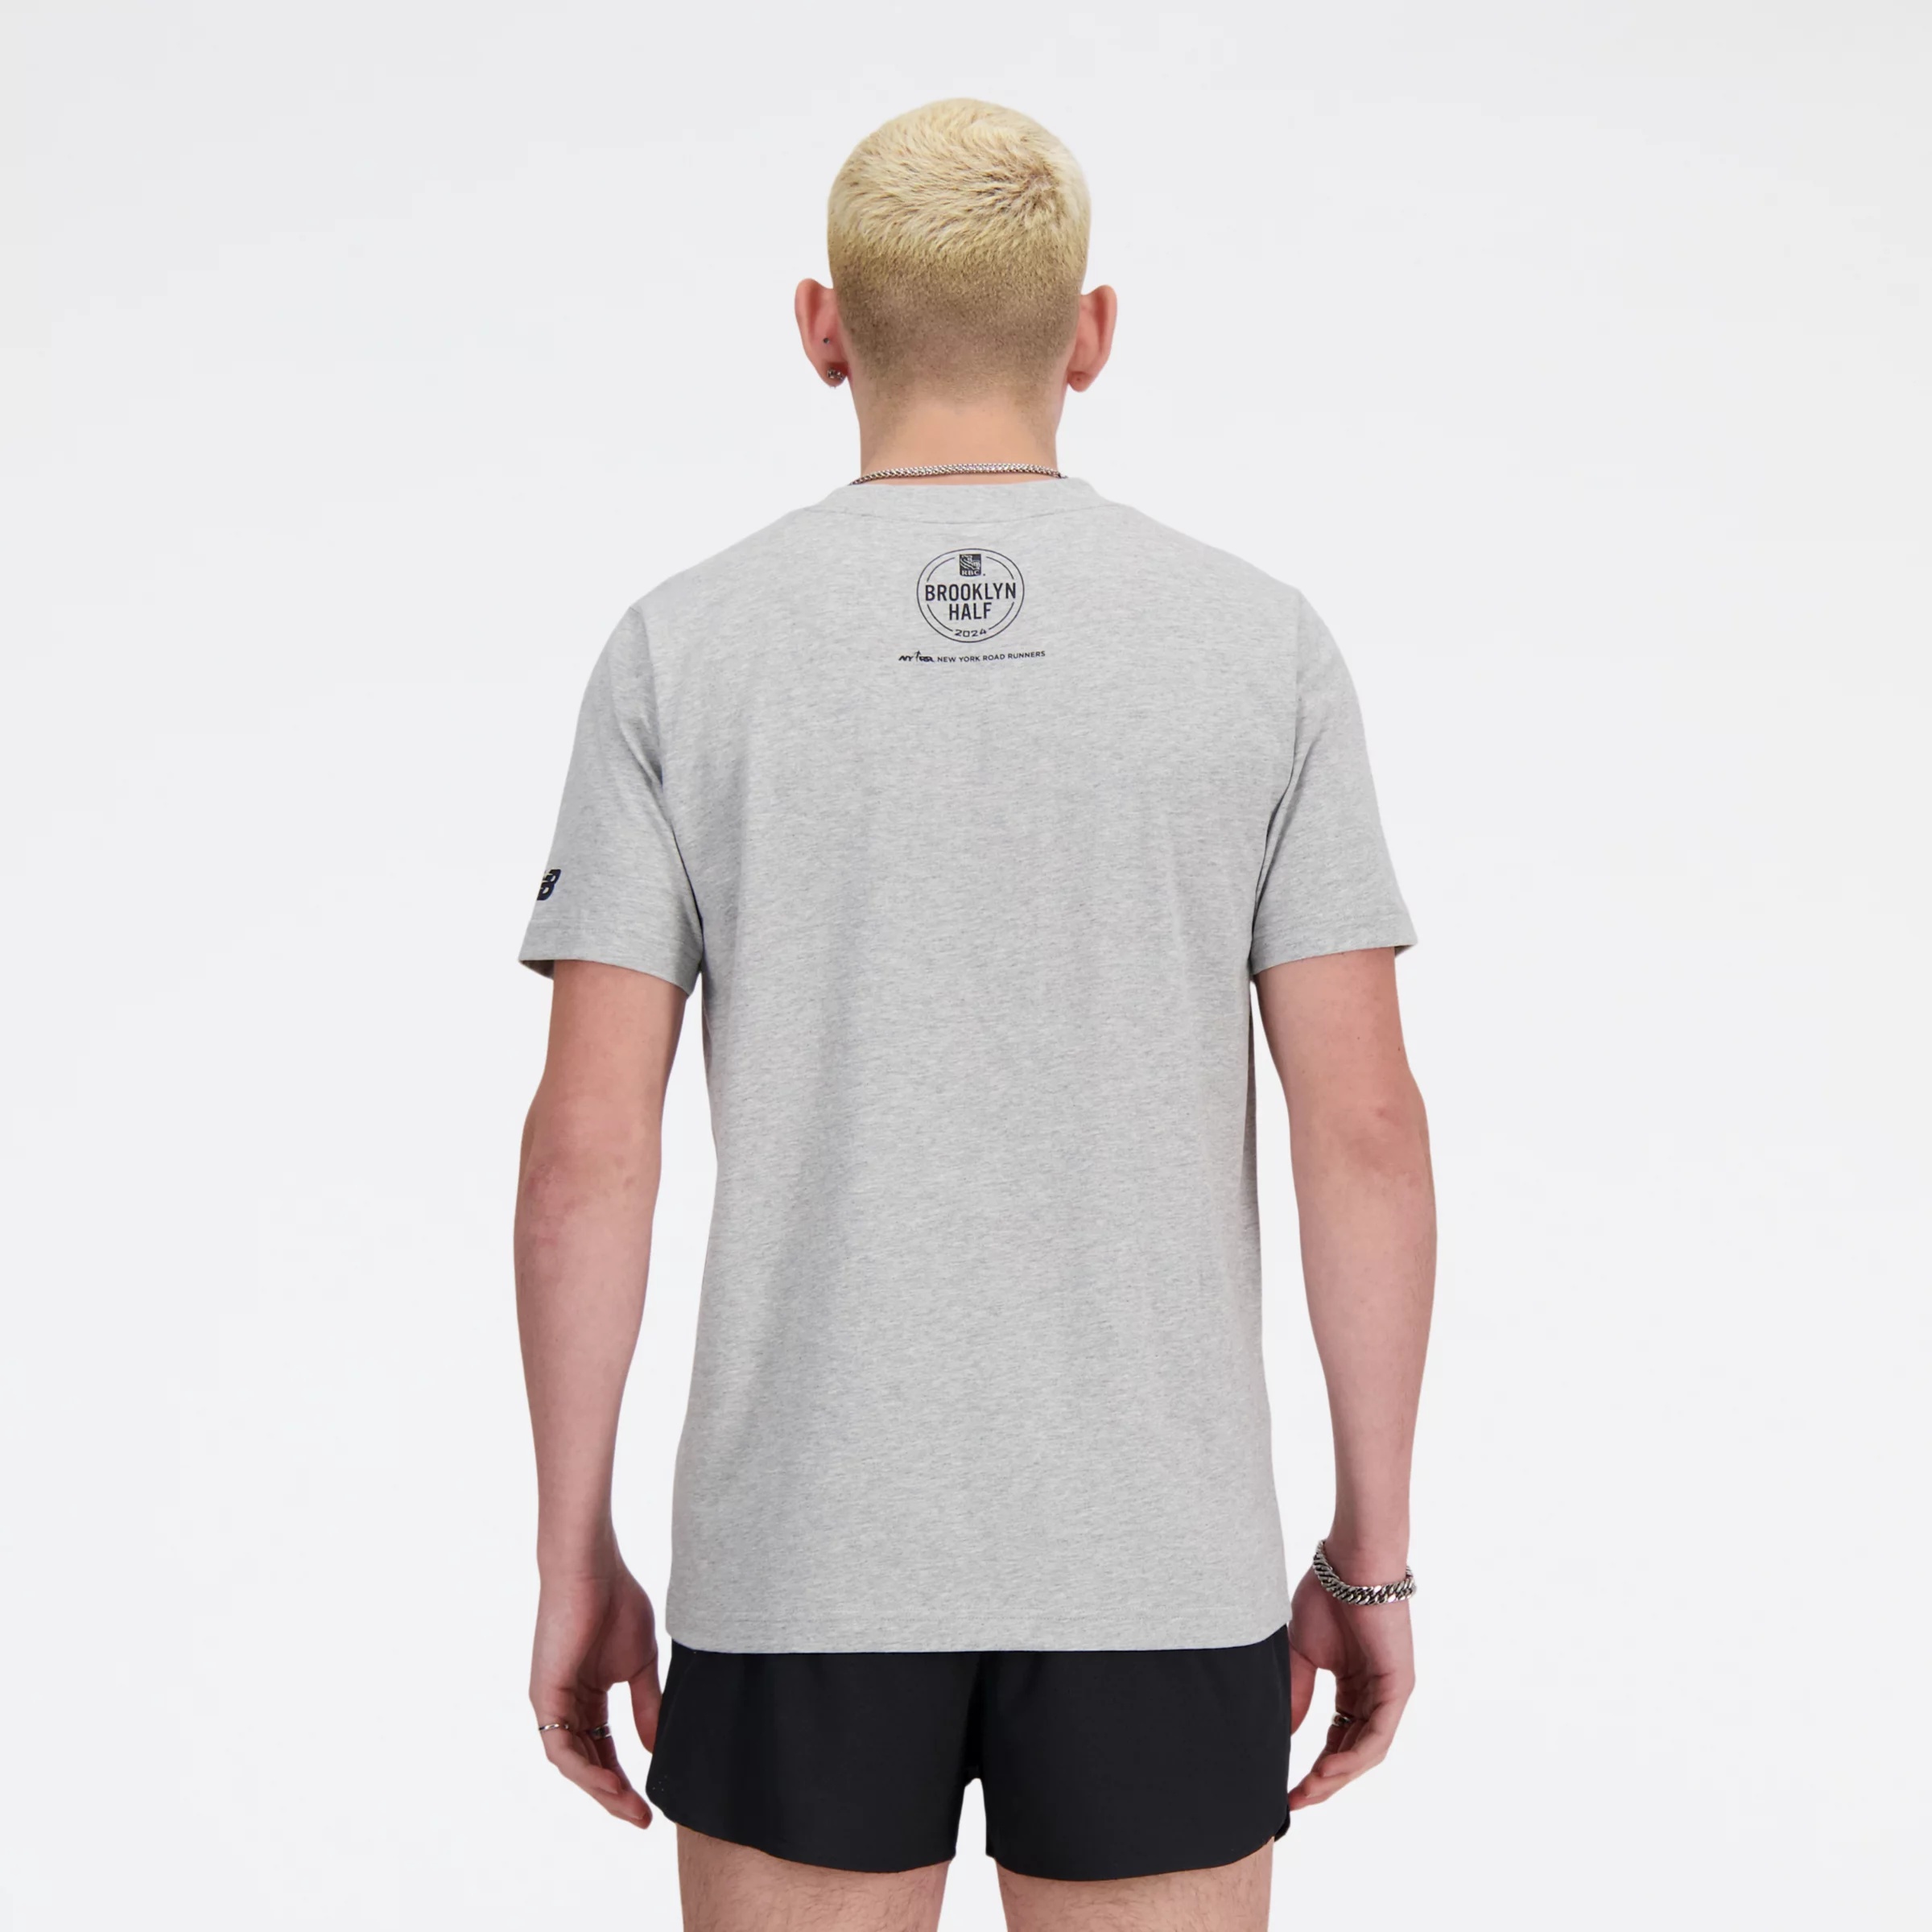 RBC Brooklyn Half Finisher T-Shirt - 4